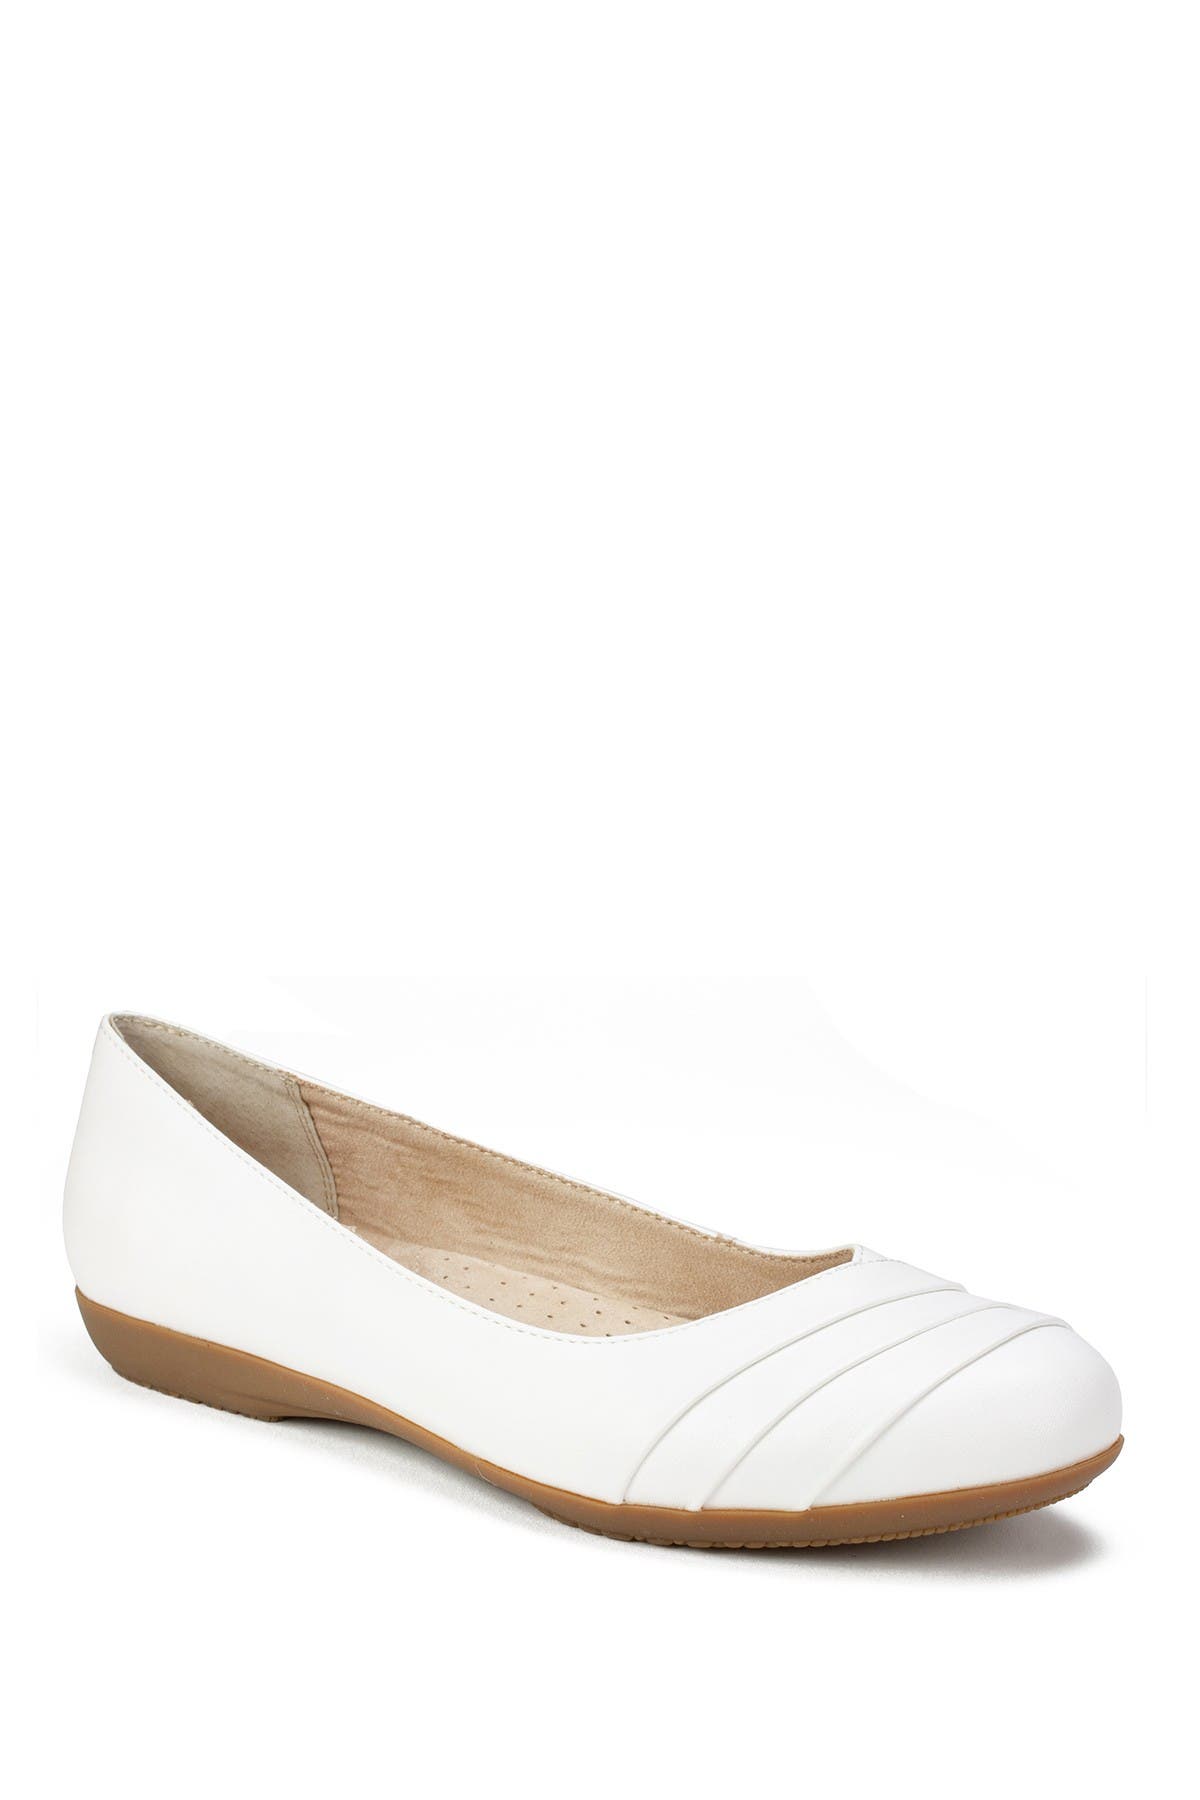 White Mountain Footwear Clara Ballet Flat In White/burnished/smoo